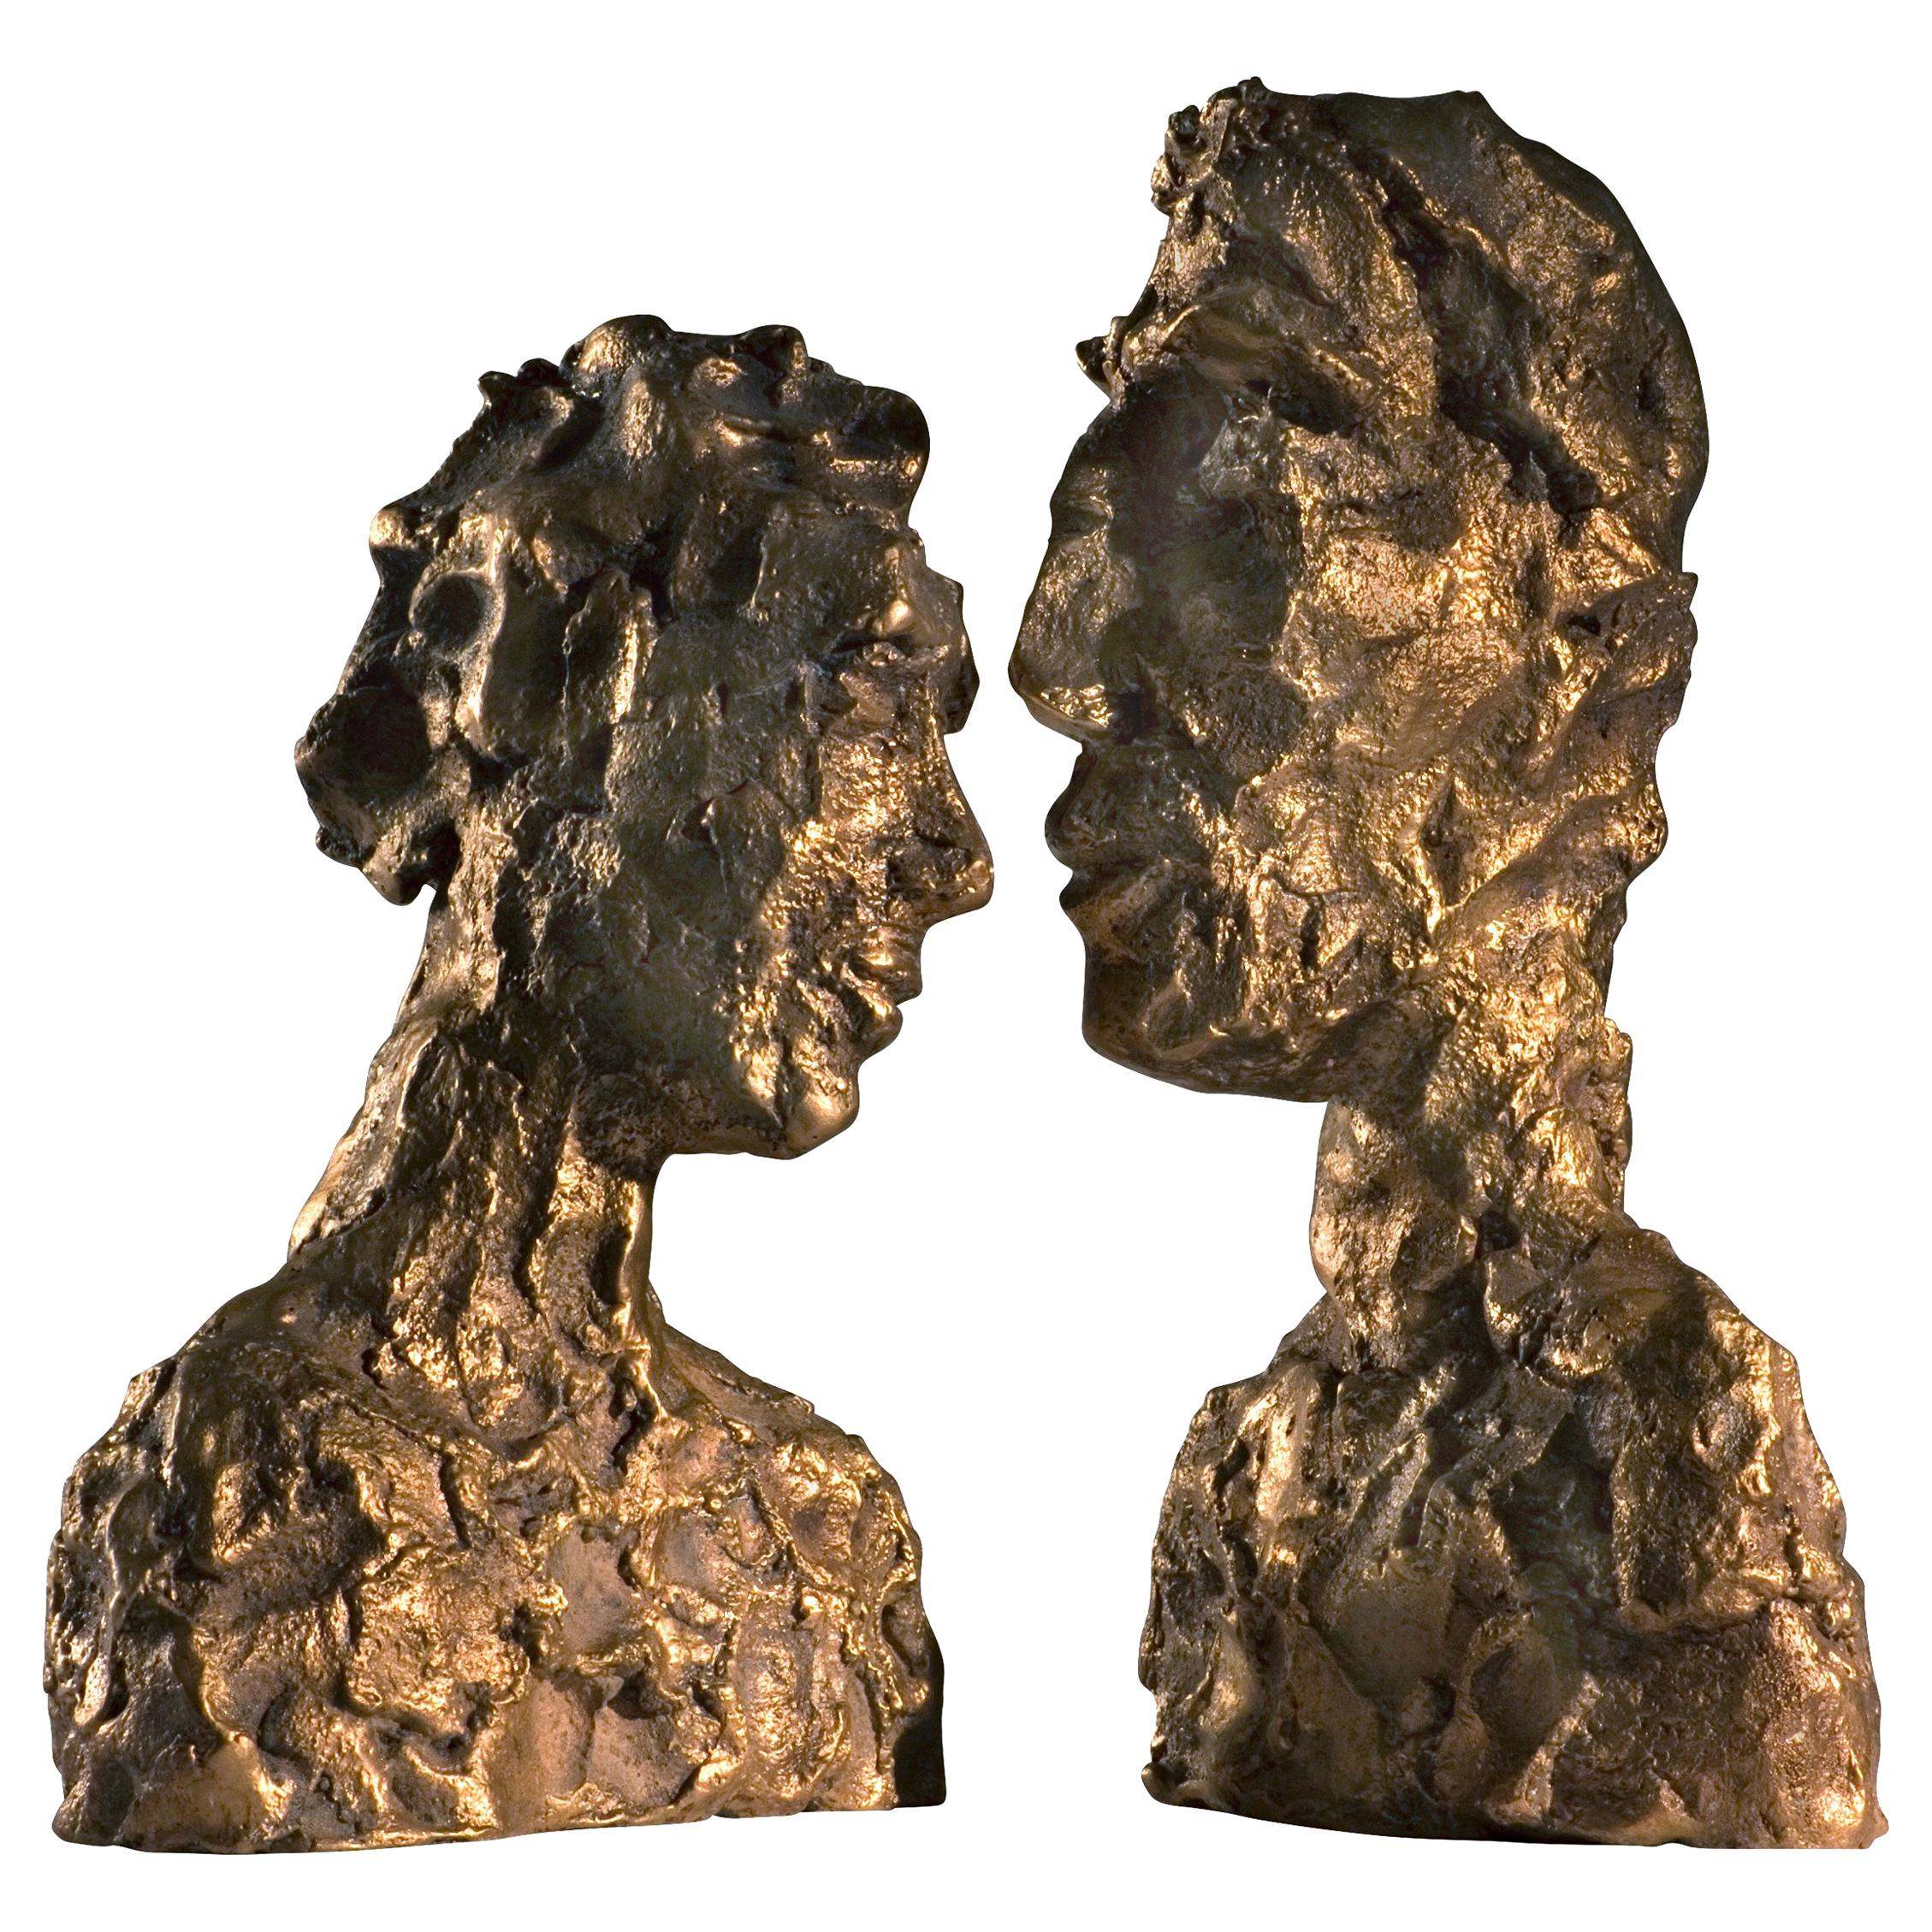 21st Century Raw Bronze Contemporary Sculpture, 'Emotion' by Margit Wittig